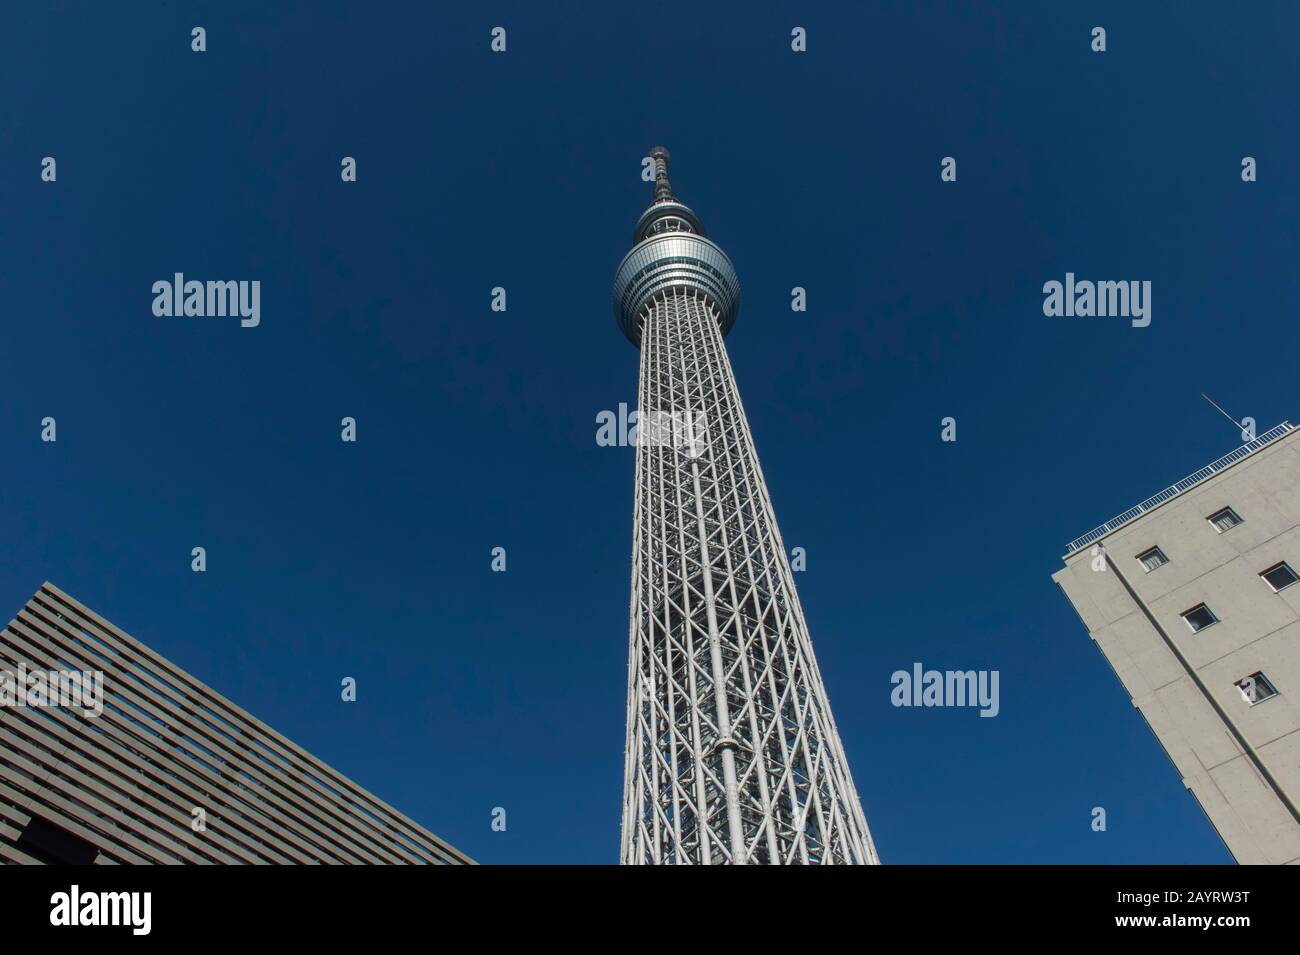 Il Tokyo Skytree è la torre più alta del mondo ed è una torre di trasmissione, ristorante e osservazione a Sumida, Tokyo, Giappone. Foto Stock